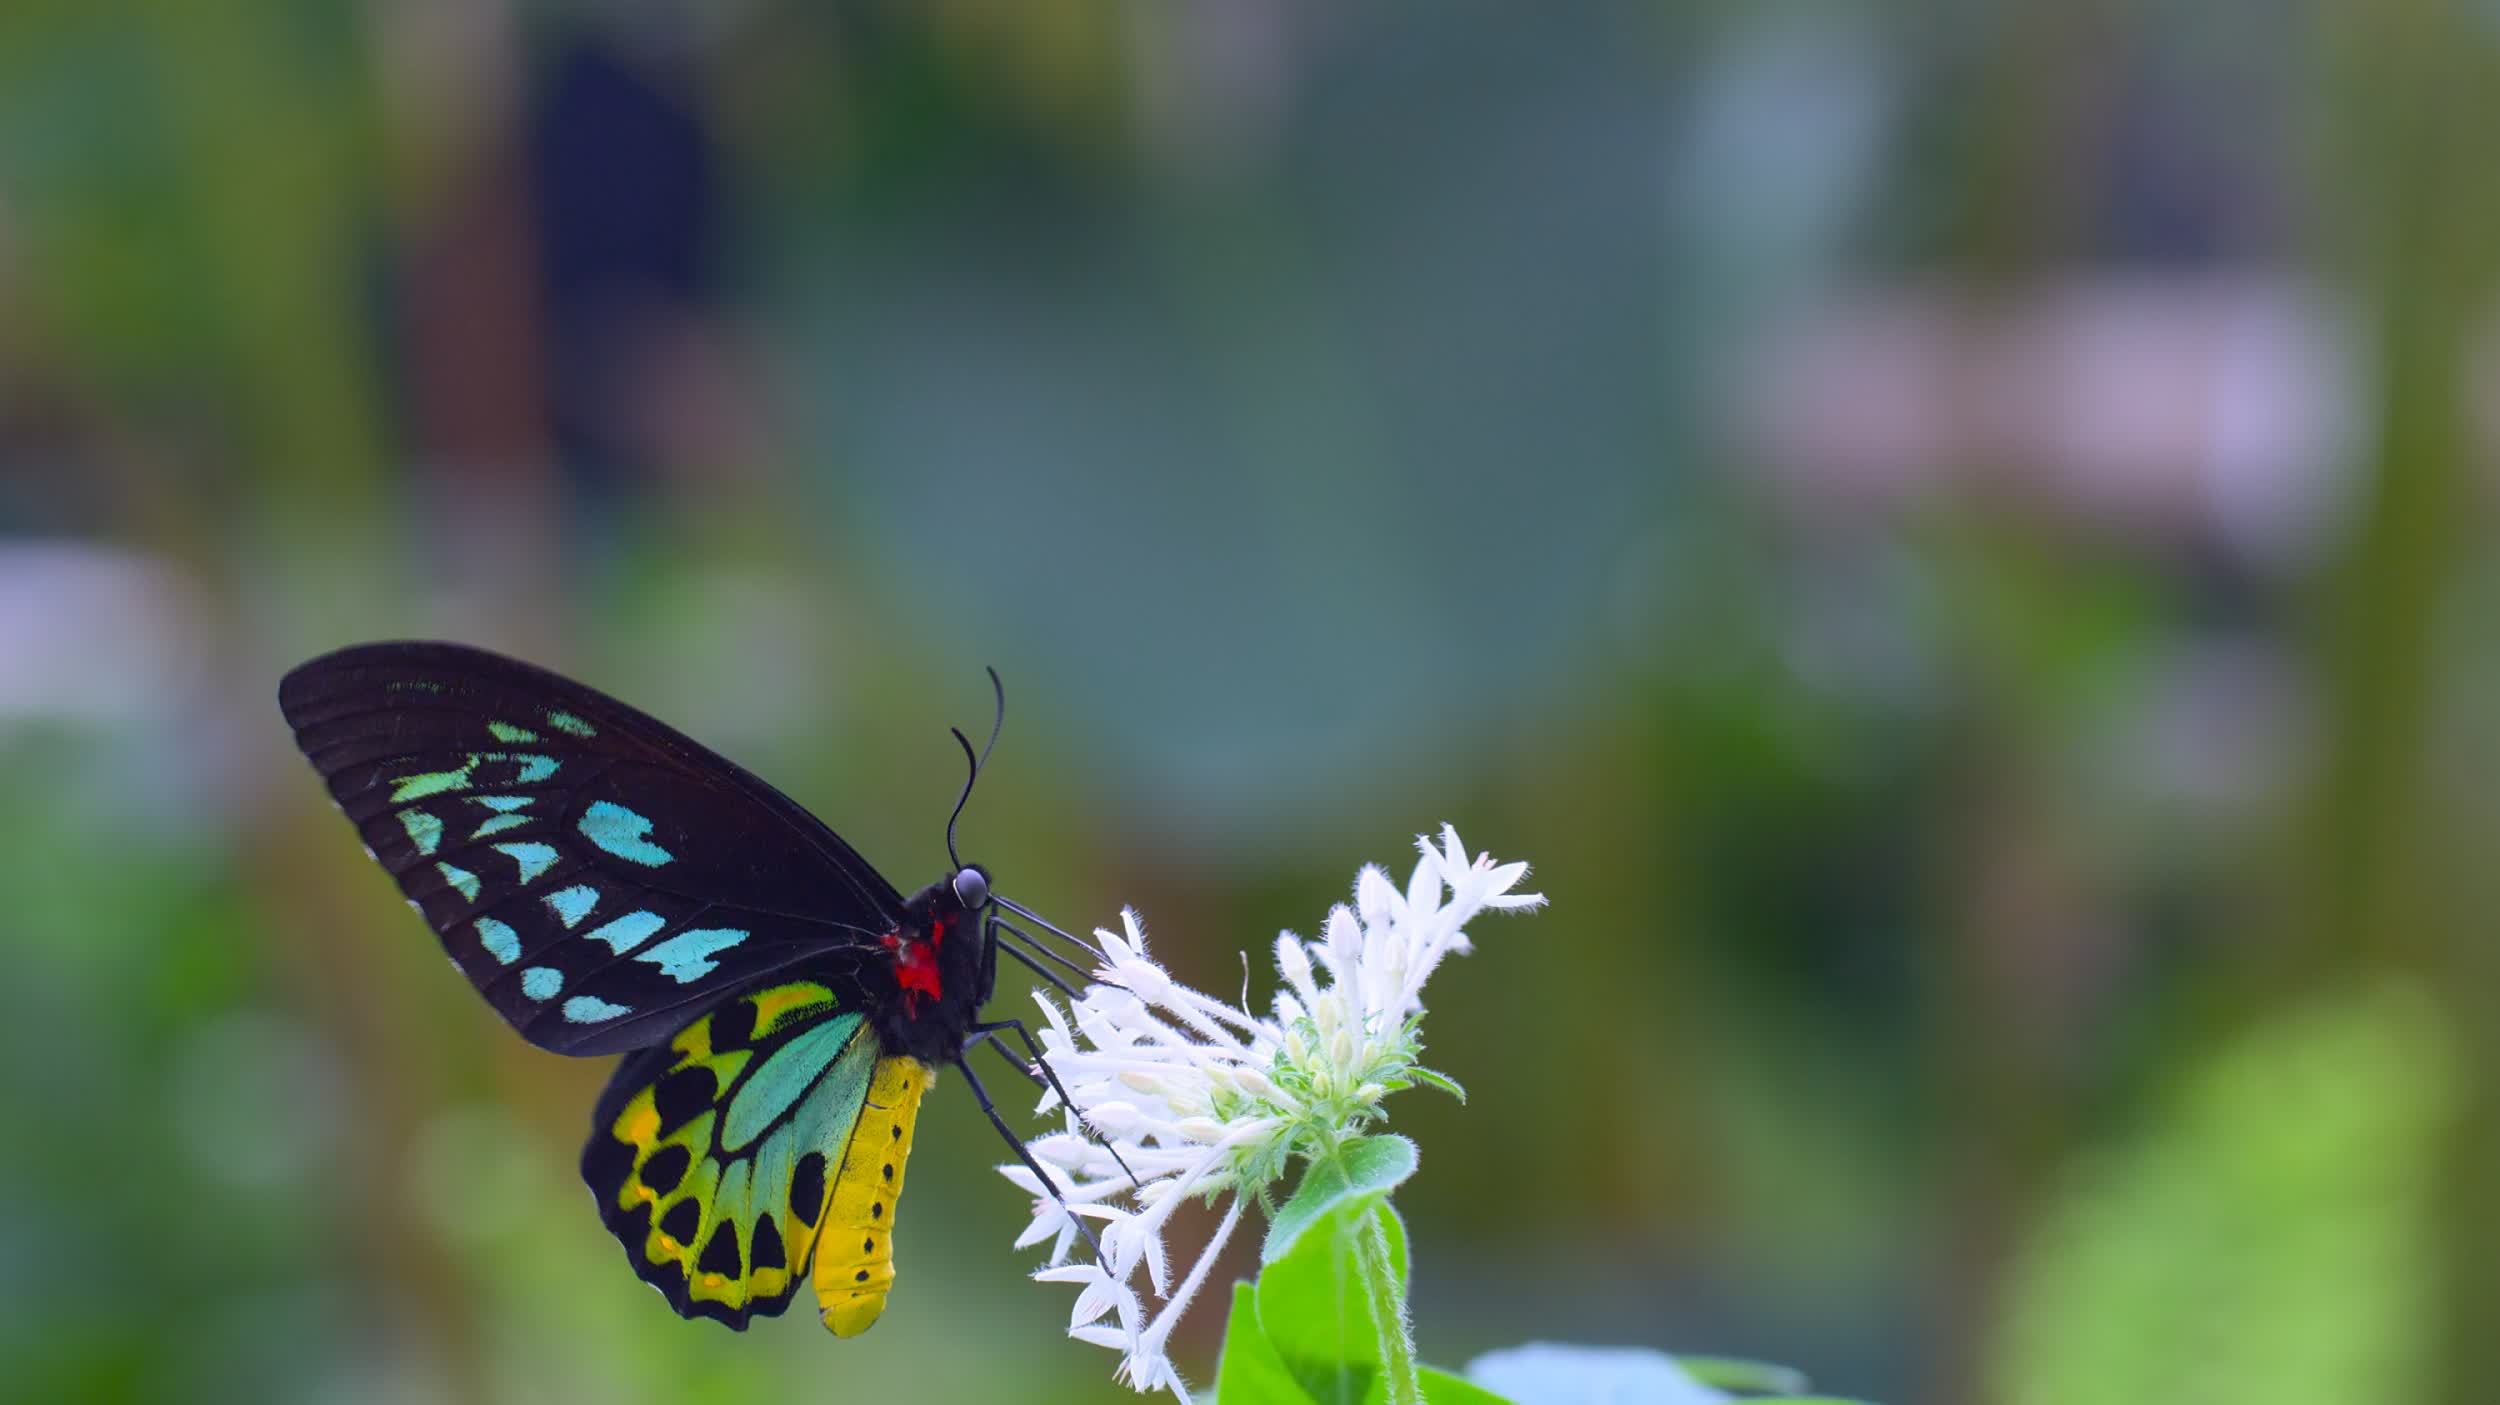 全新球幕電影《動物王國》，帶領觀眾探索六個動物家族的棲息地。圖示一隻蝴蝶正在吸食花蜜，並且在花朵之間傳播花粉，協助植物的繁衍。（圖片來源：DEFINITION FILMS）